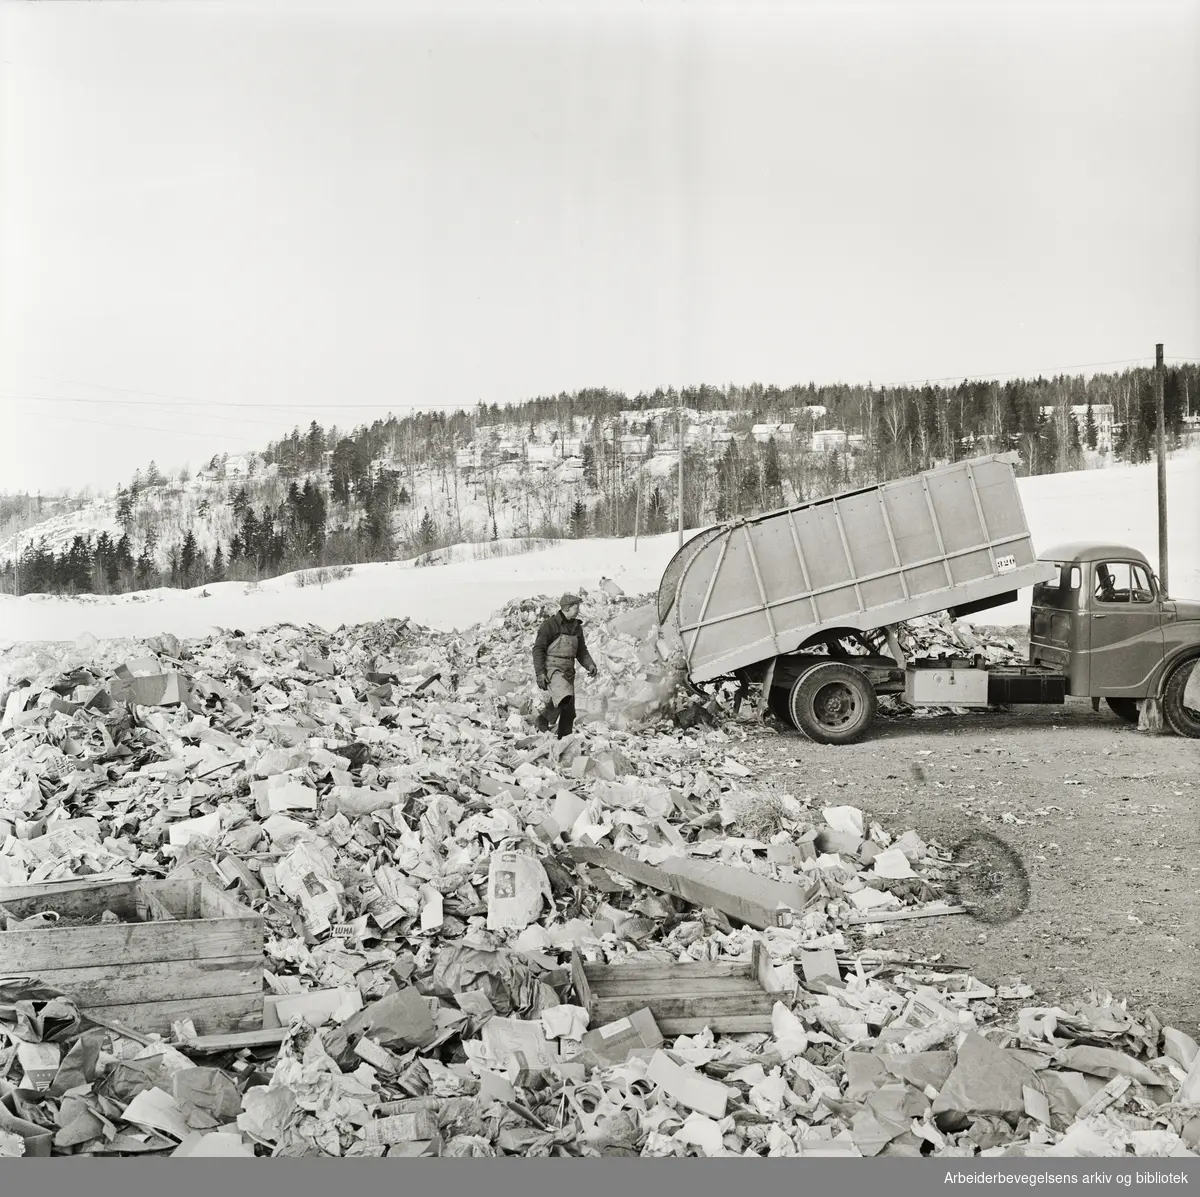 Renholdsverkets søppelfyllinger på Romsås - Sannerud. Kilde til luftforurensing i hele Grorud-området. Februar 1963.